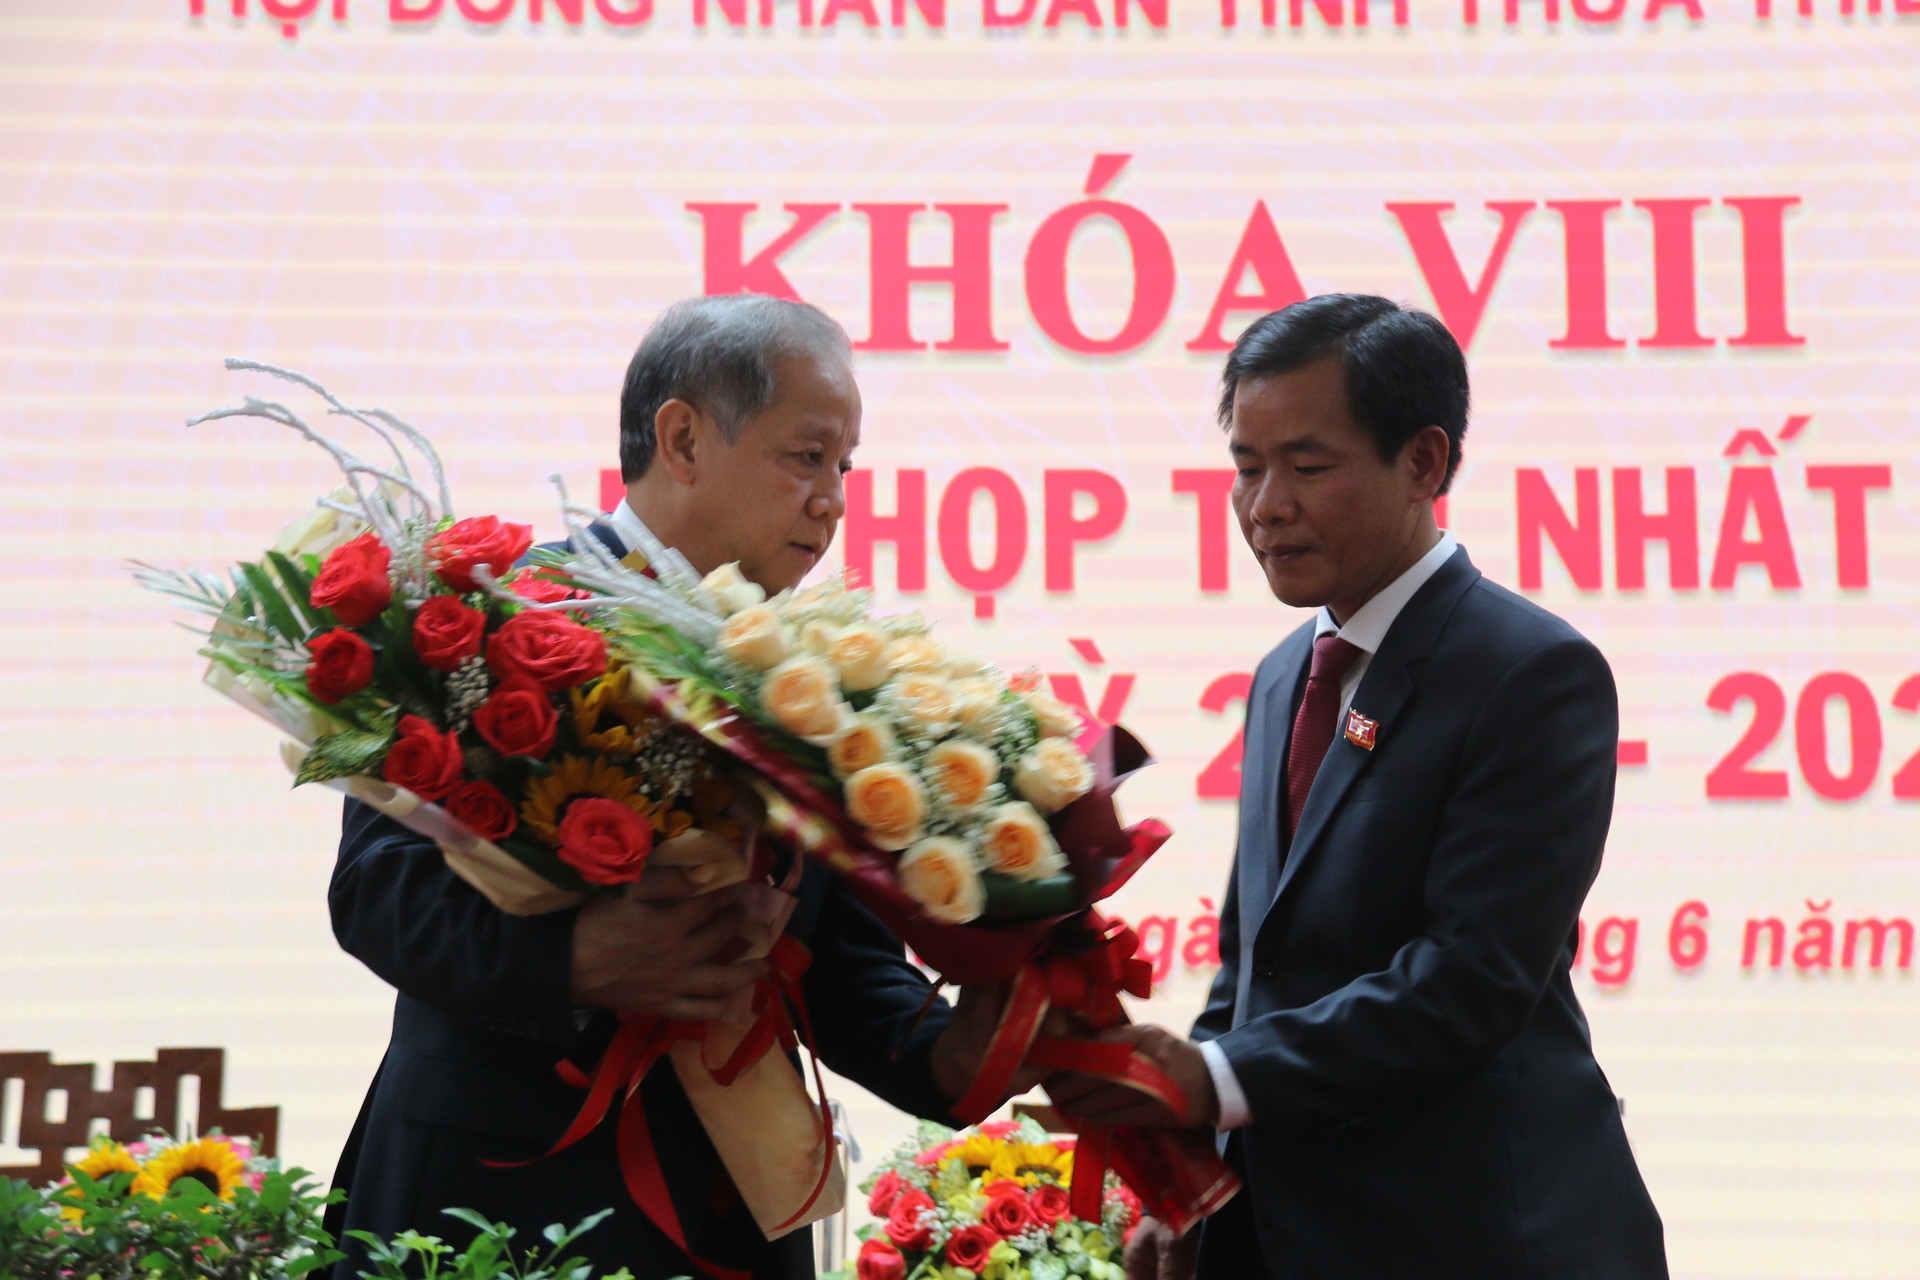 Ông Nguyễn Văn Phương được bầu làm Chủ tịch UBND tỉnh Thừa Thiên - Huế - 1